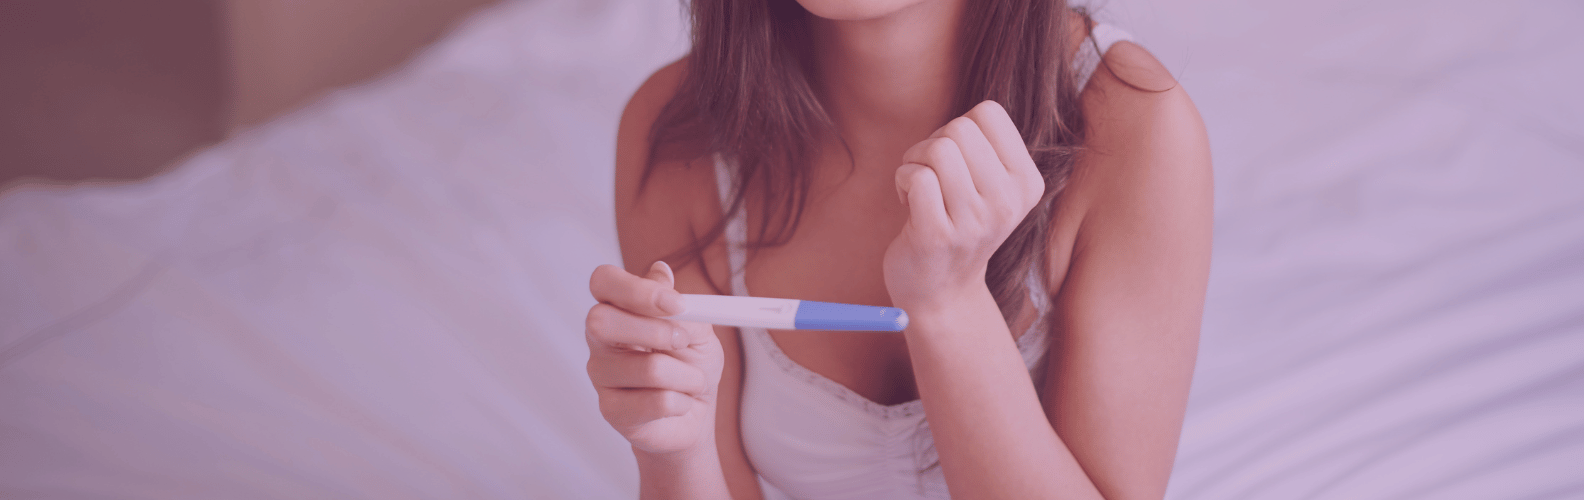 Pruebas diagnósticas de fertilidad para mujer-Histerosalpingografía